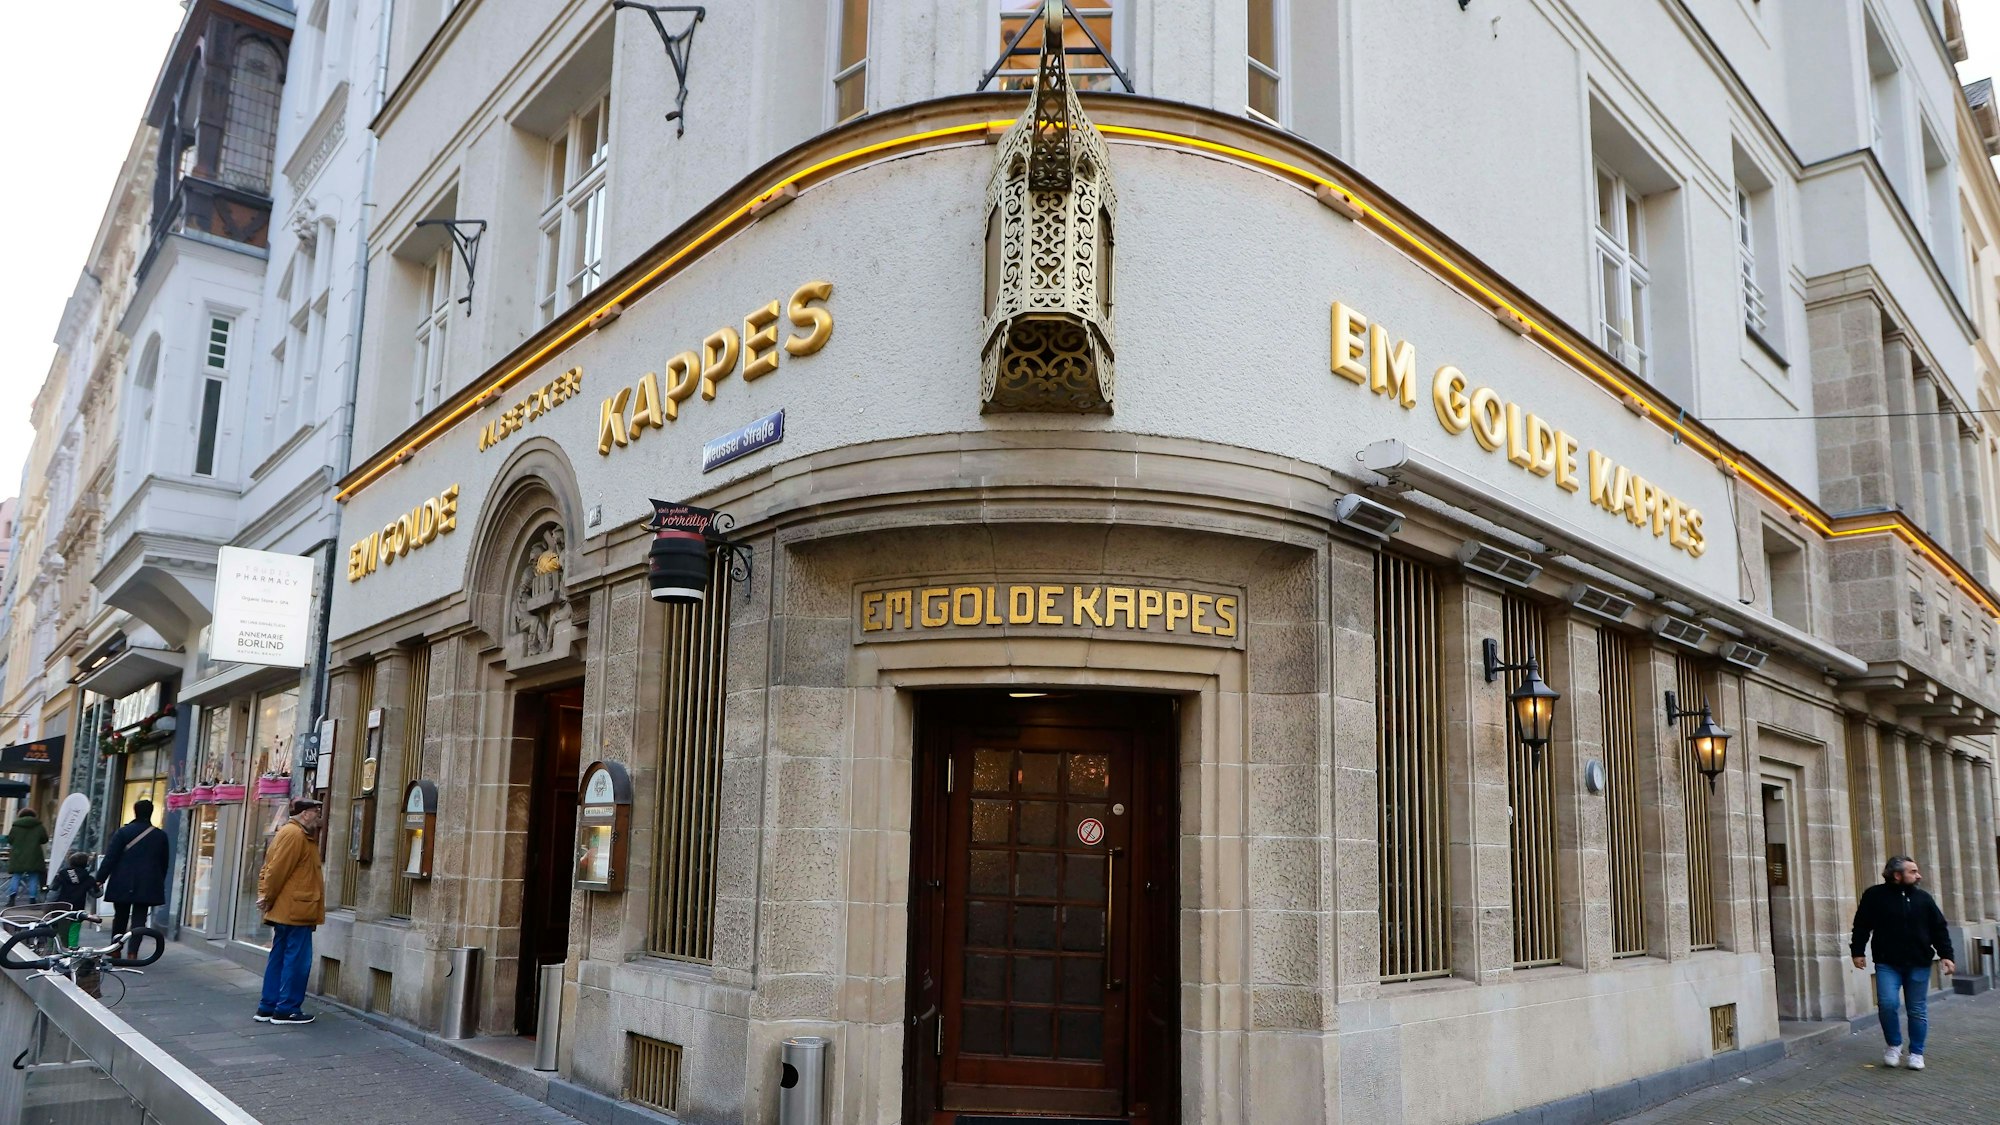 Das Kölner Brauhaus „Em Golde Kappes“ in Nippes. Das Wahrzeichen über dem Eingang fehlt.